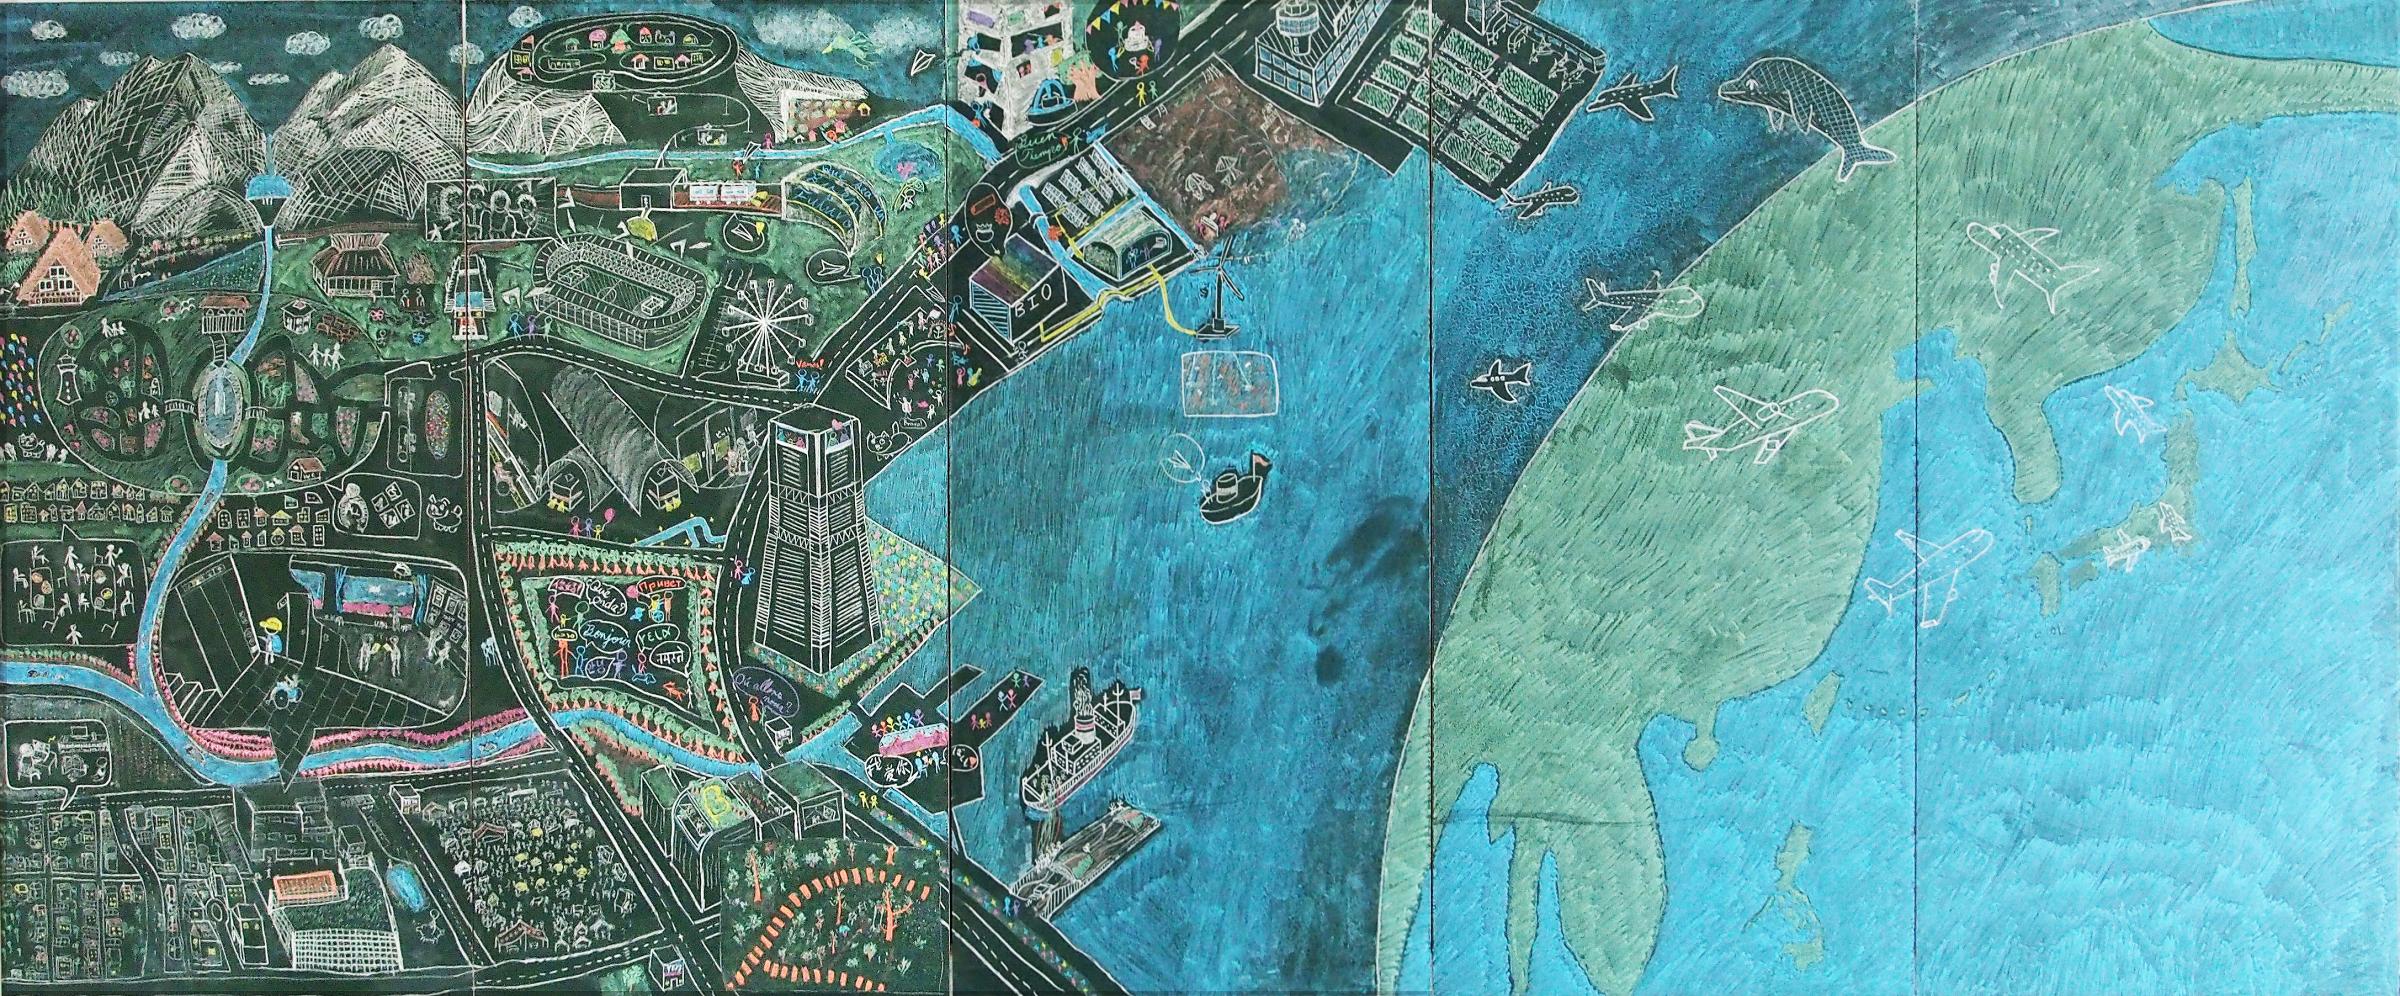 優秀賞作品『理想の都市－世界とつながり共に暮らすダイバーシティ』